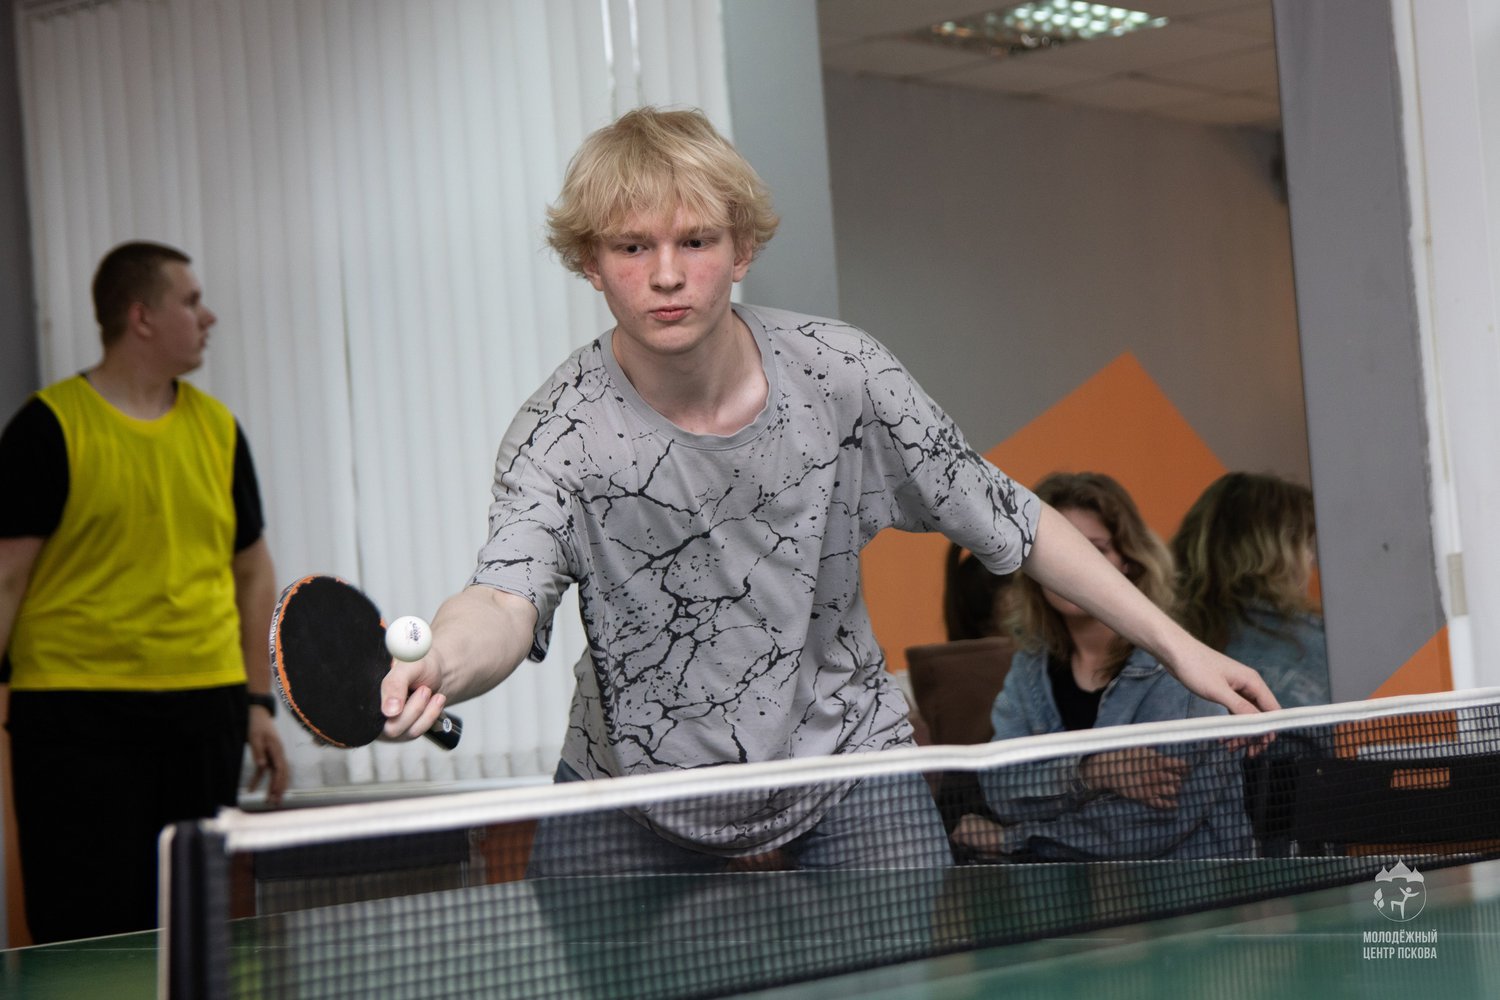 21 июля Псковский городской молодёжный центр приглашает молодёжь принять участие в турнире по настольному теннису, приуроченном к Дню города Пскова.